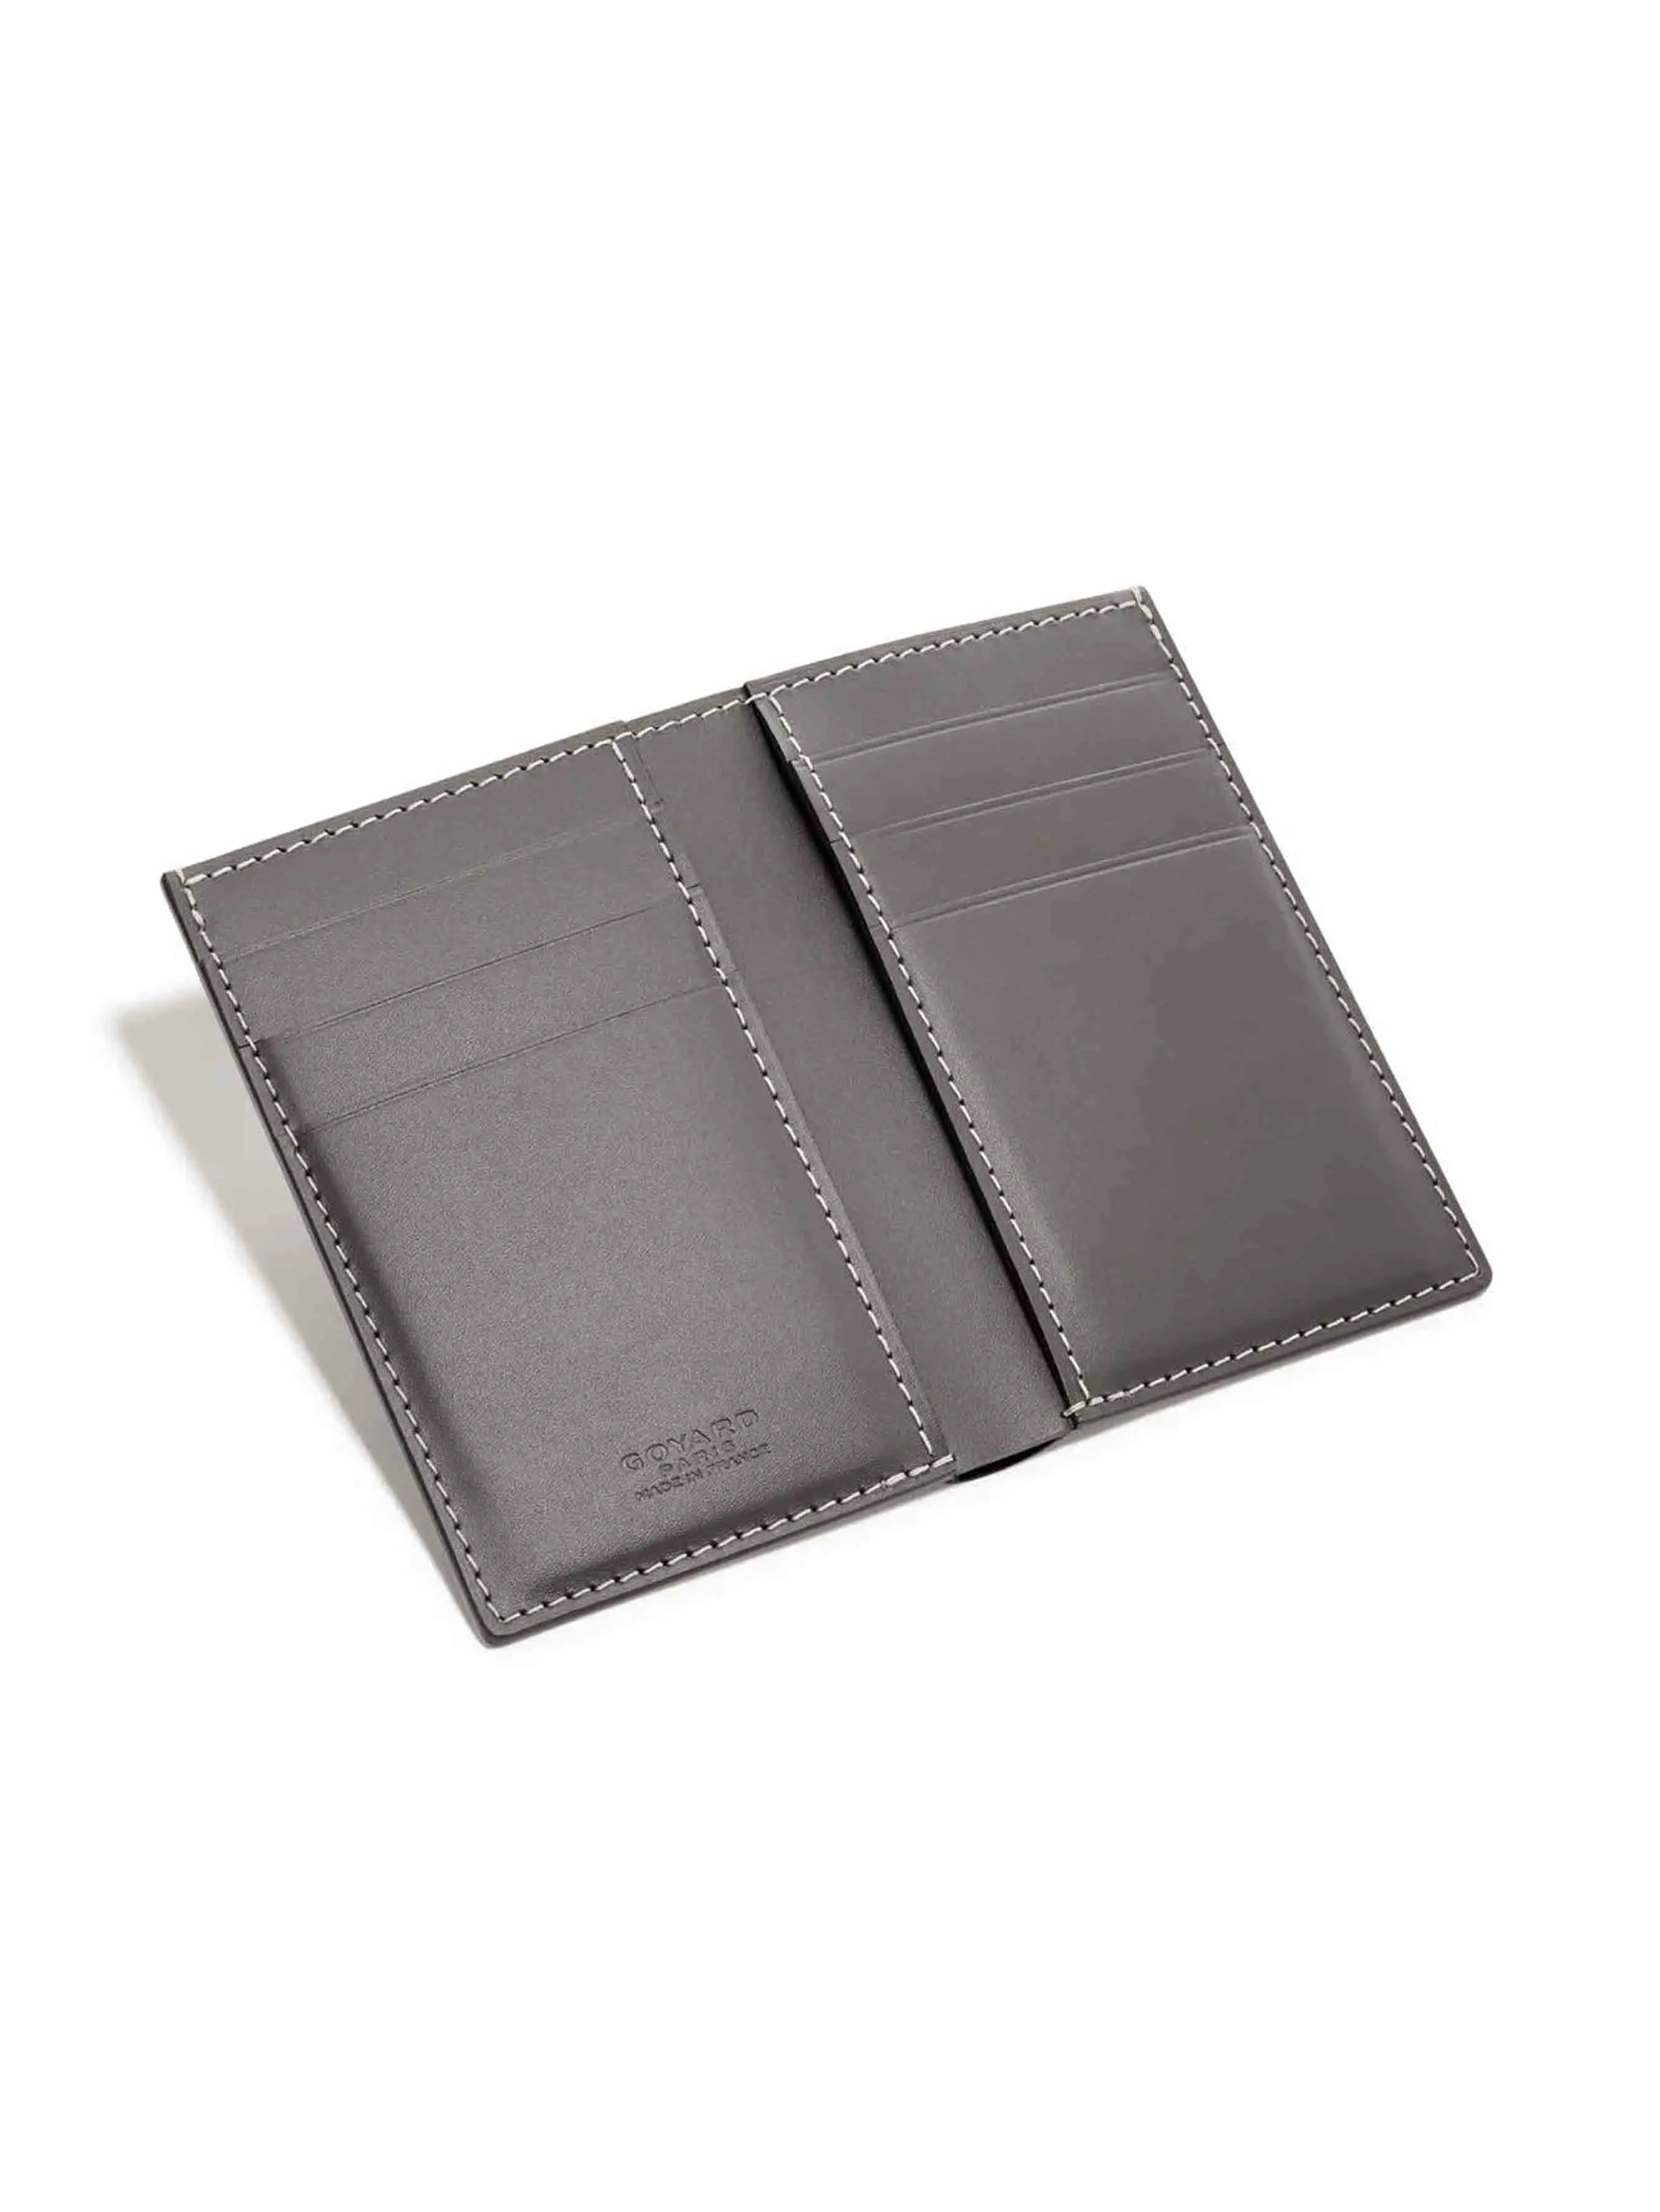 Goyard, Accessories, Goyard Malesherbes Card Holder Wallet Grey